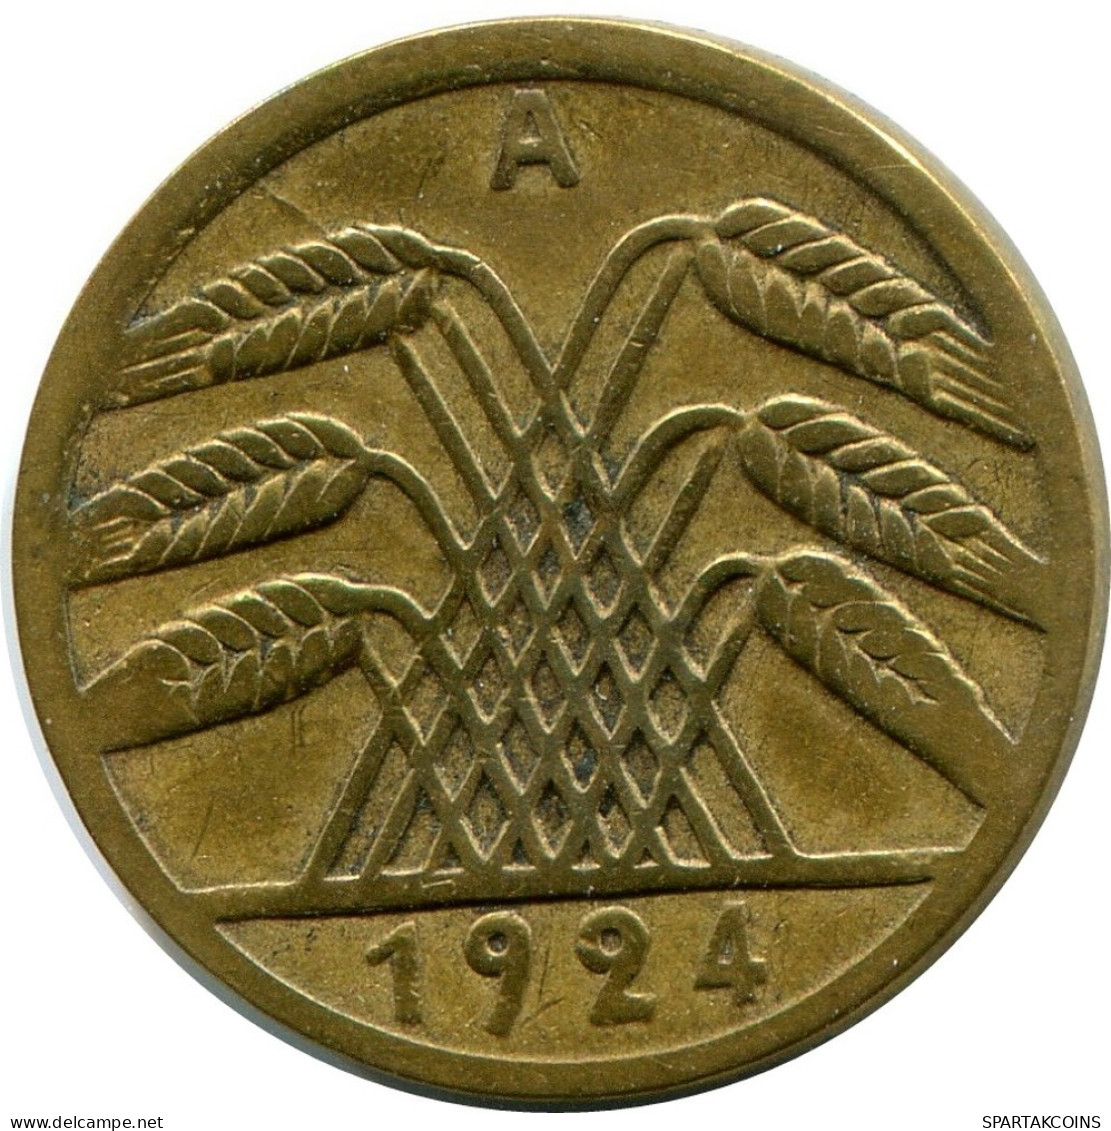 5 RENTENPFENNIG 1924 A GERMANY Coin #DB872.U.A - 5 Rentenpfennig & 5 Reichspfennig